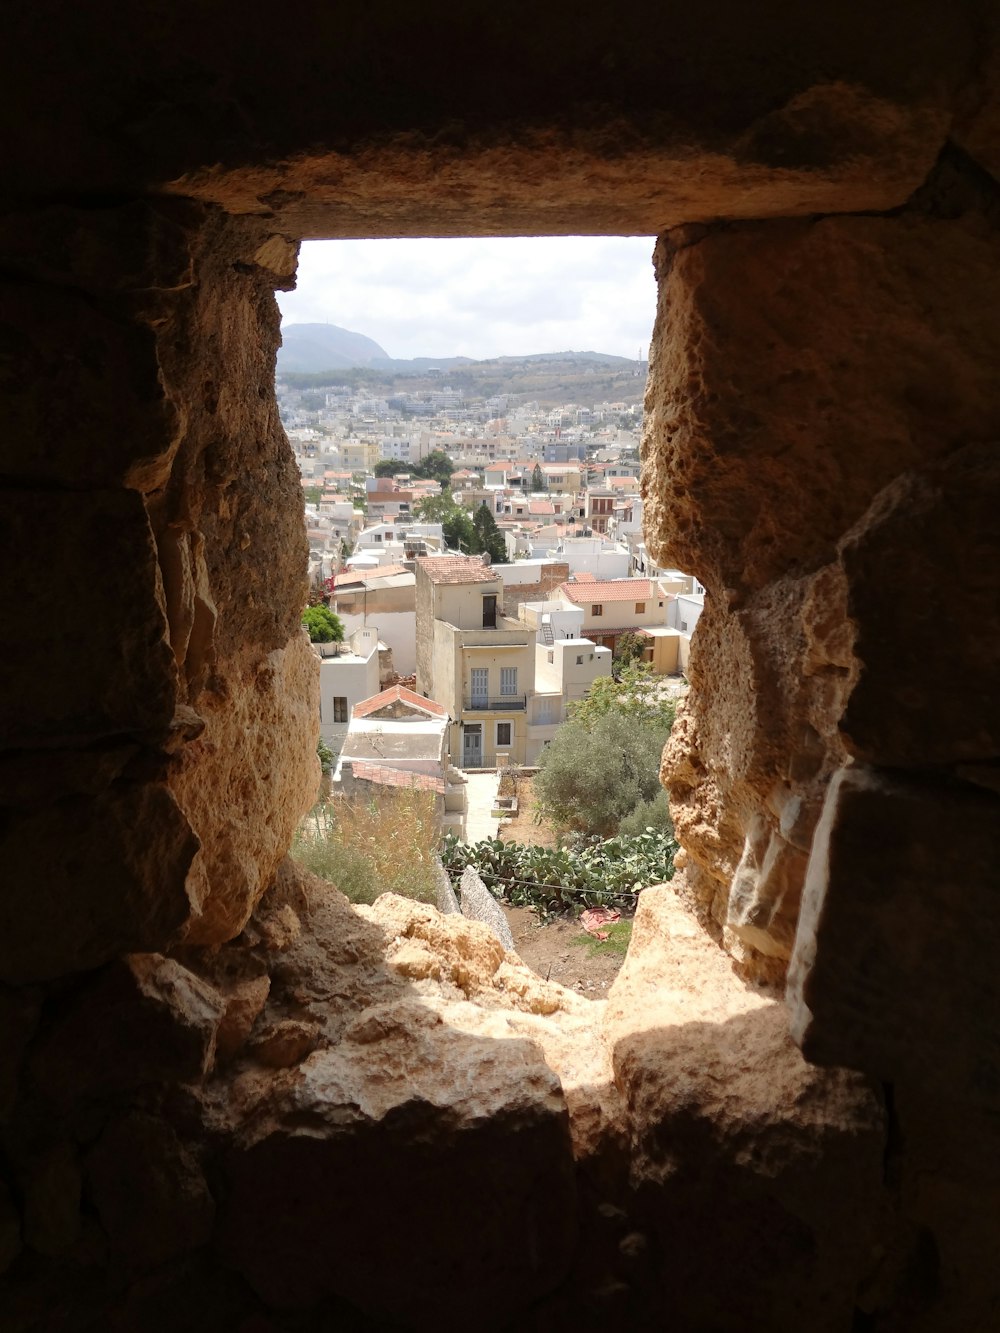 Una vista di una città da una finestra in un edificio in pietra